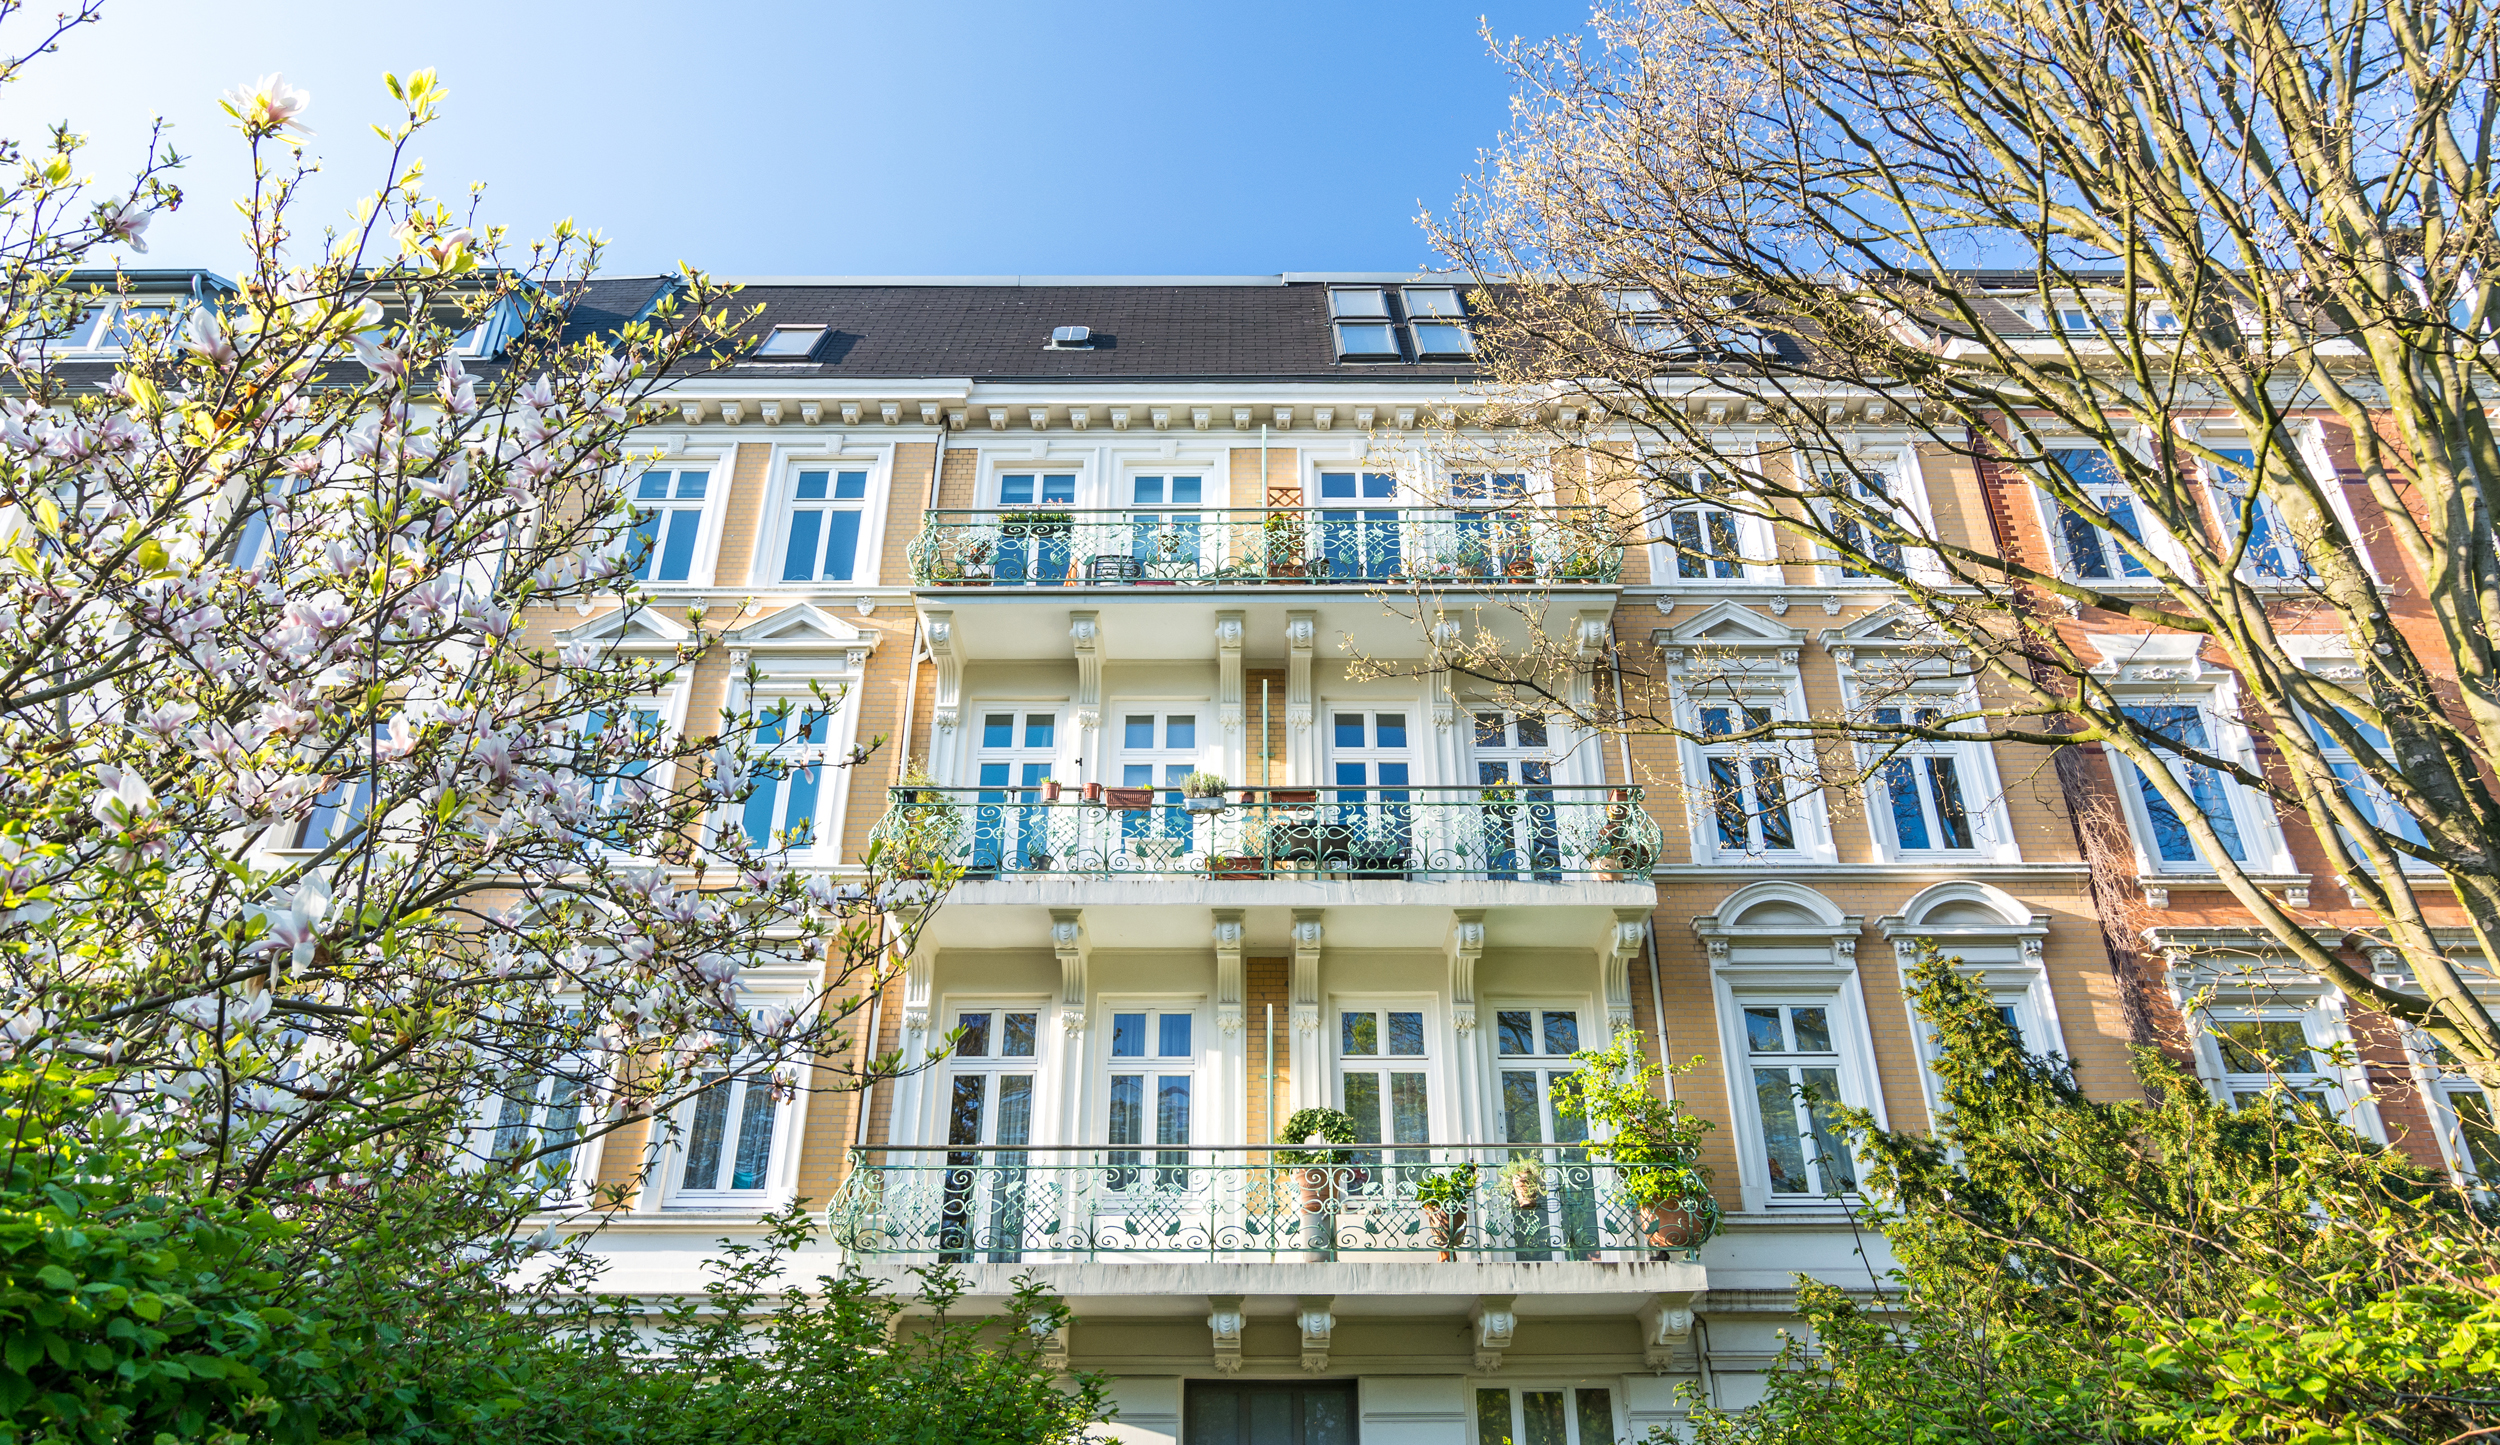 Mehrfamilienhaus verkaufen - Citak Immobilien.jpg 5 einfache Schritte um Ihr Mehrfamilienhaus in Köln schnell und sicher zu verkaufen